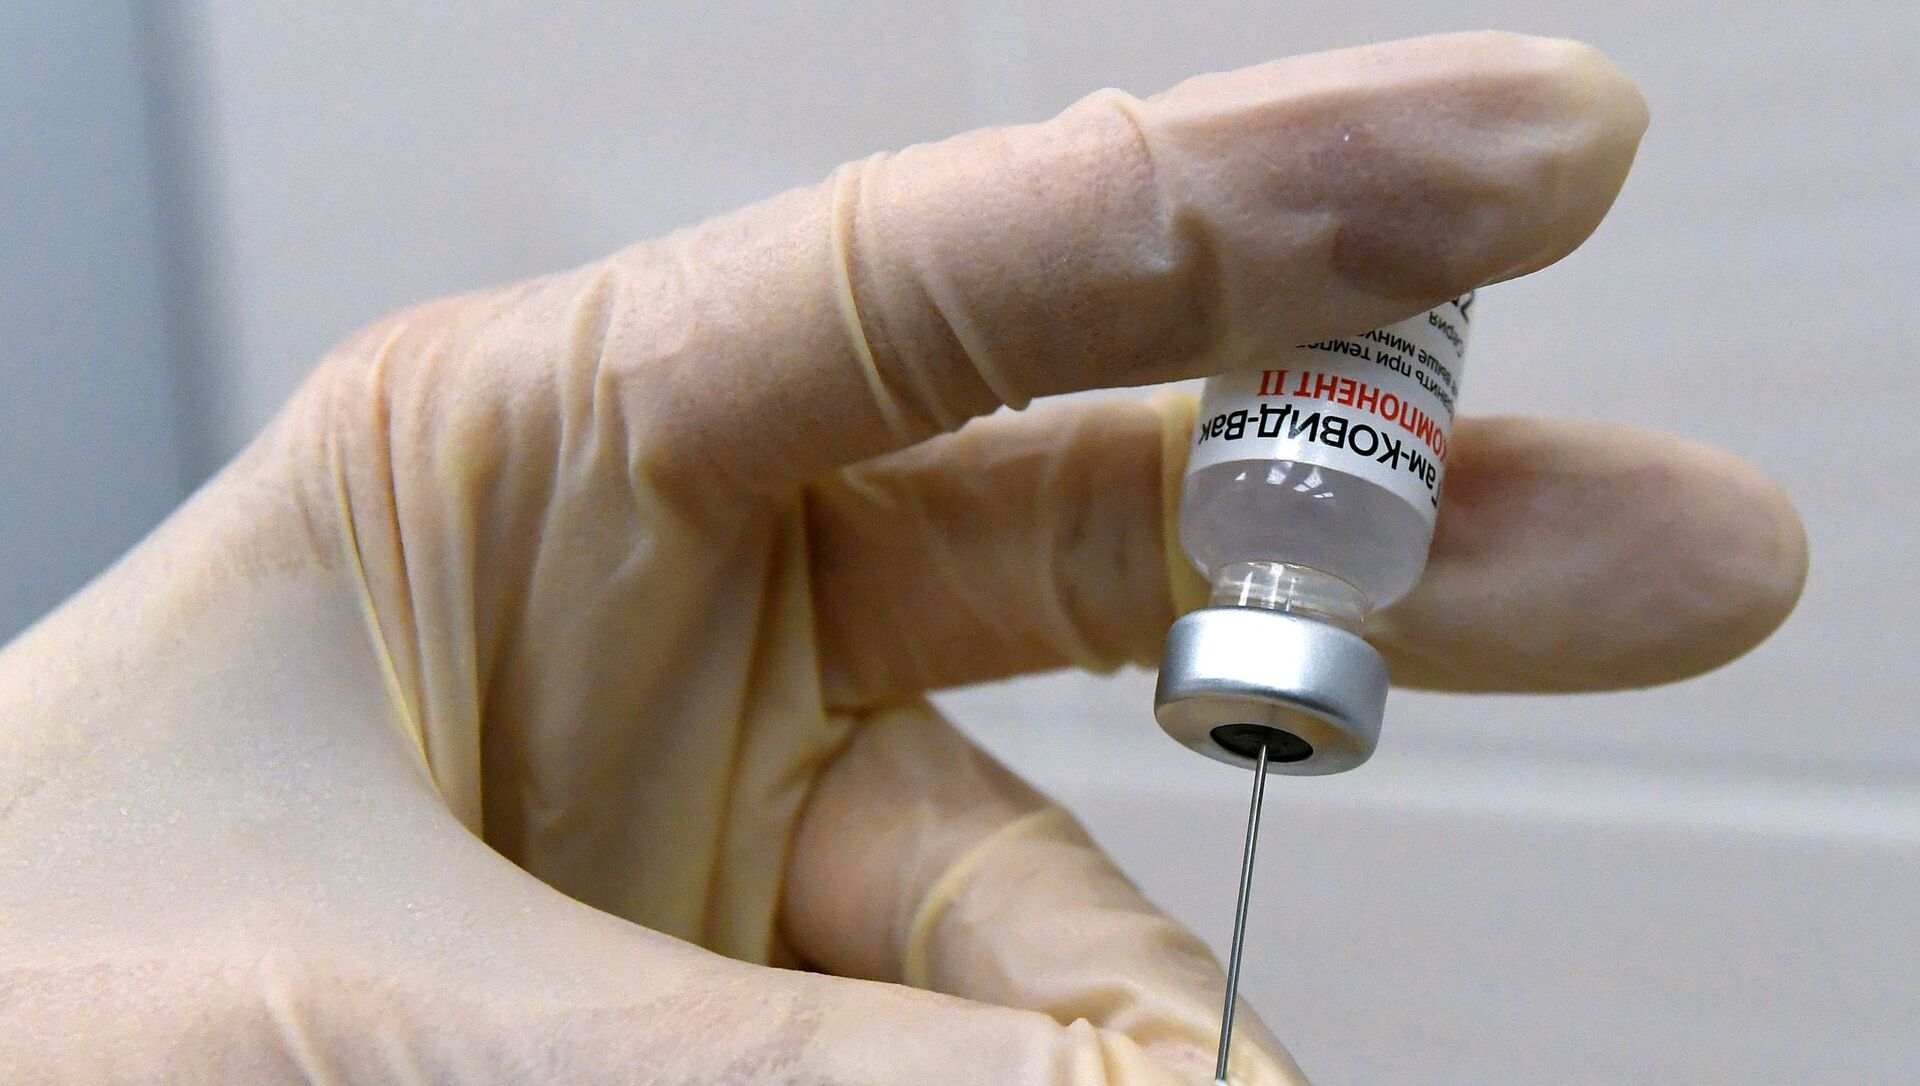 Медсестра набирает в шприц вакцину против COVID-19 Спутник V (Гам-КОВИД-Вак) - Sputnik Lietuva, 1920, 10.02.2021